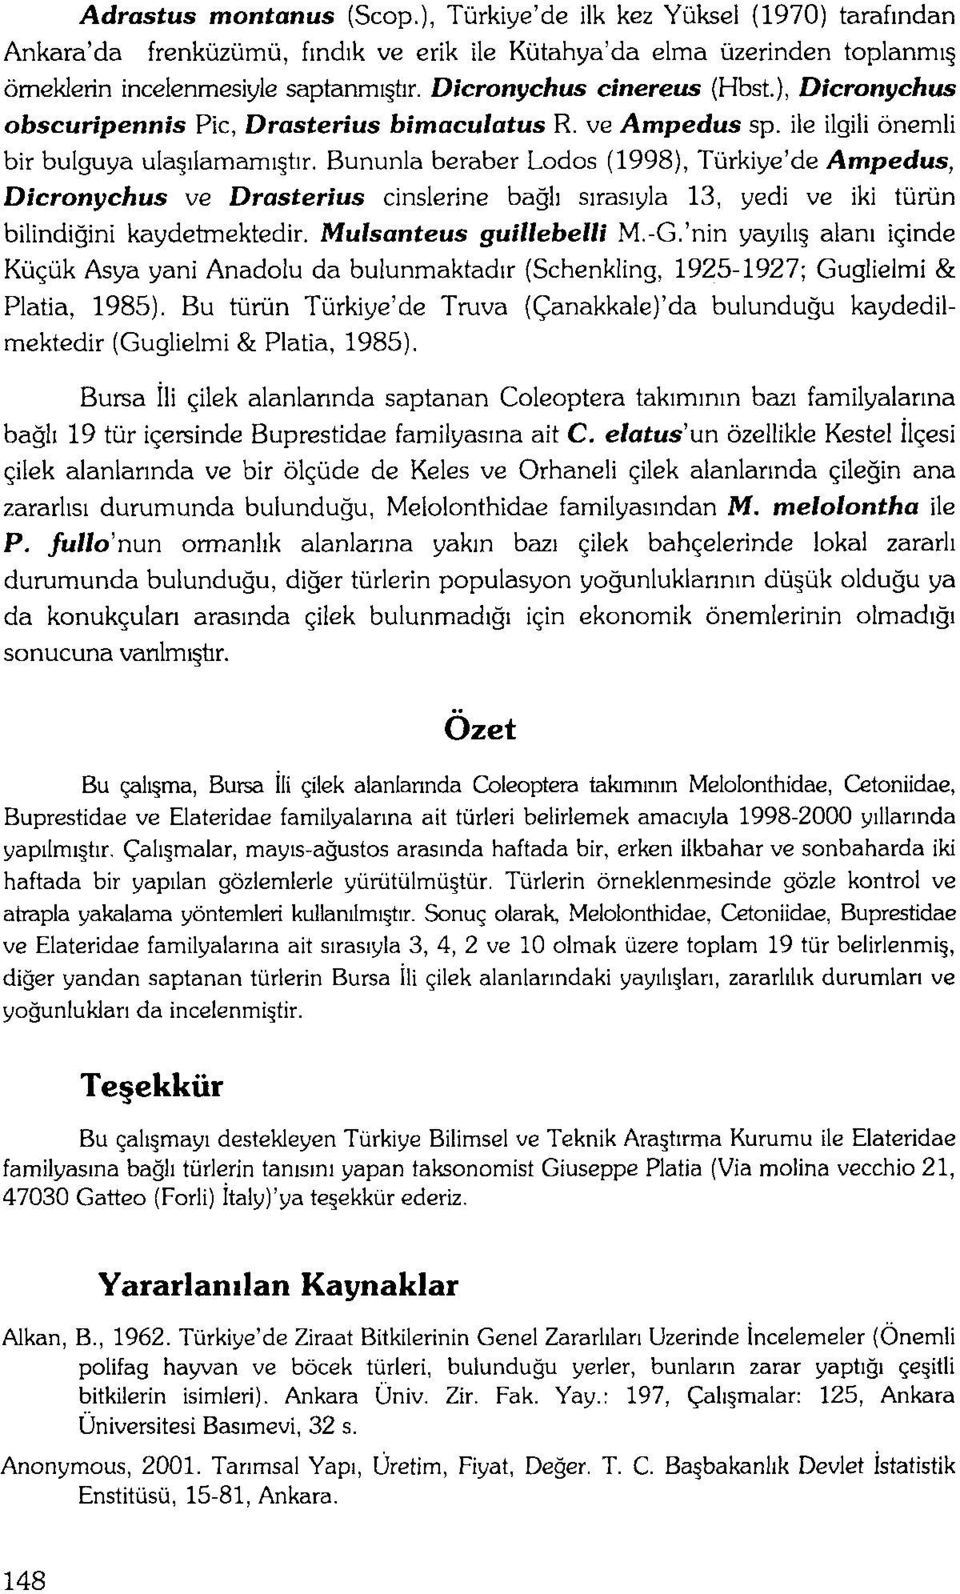 Bununla beraber Lodos (1998), Turkiye'de Ampedus, Dicronychus ve Drasterius cinslerine bagh sirasiyla 13, yedi ve iki turun bilindiqini kaydetmektedir. Mulsanteus guillebelli M.-G.'nin yayiii alan!